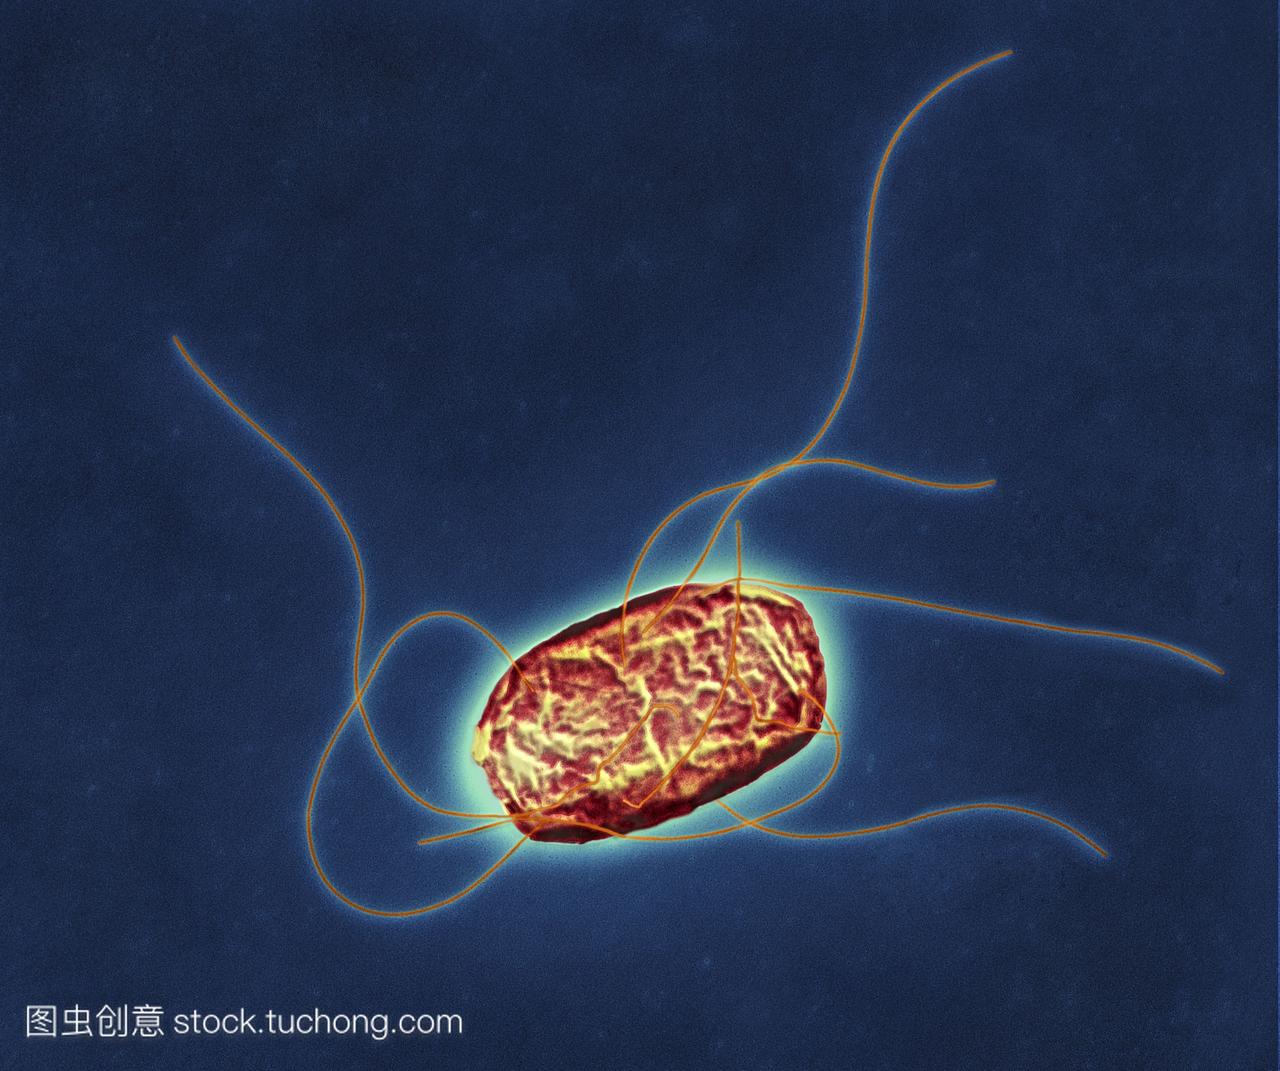 鼠伤寒沙门氏菌的细菌彩色透射电子显微镜TE